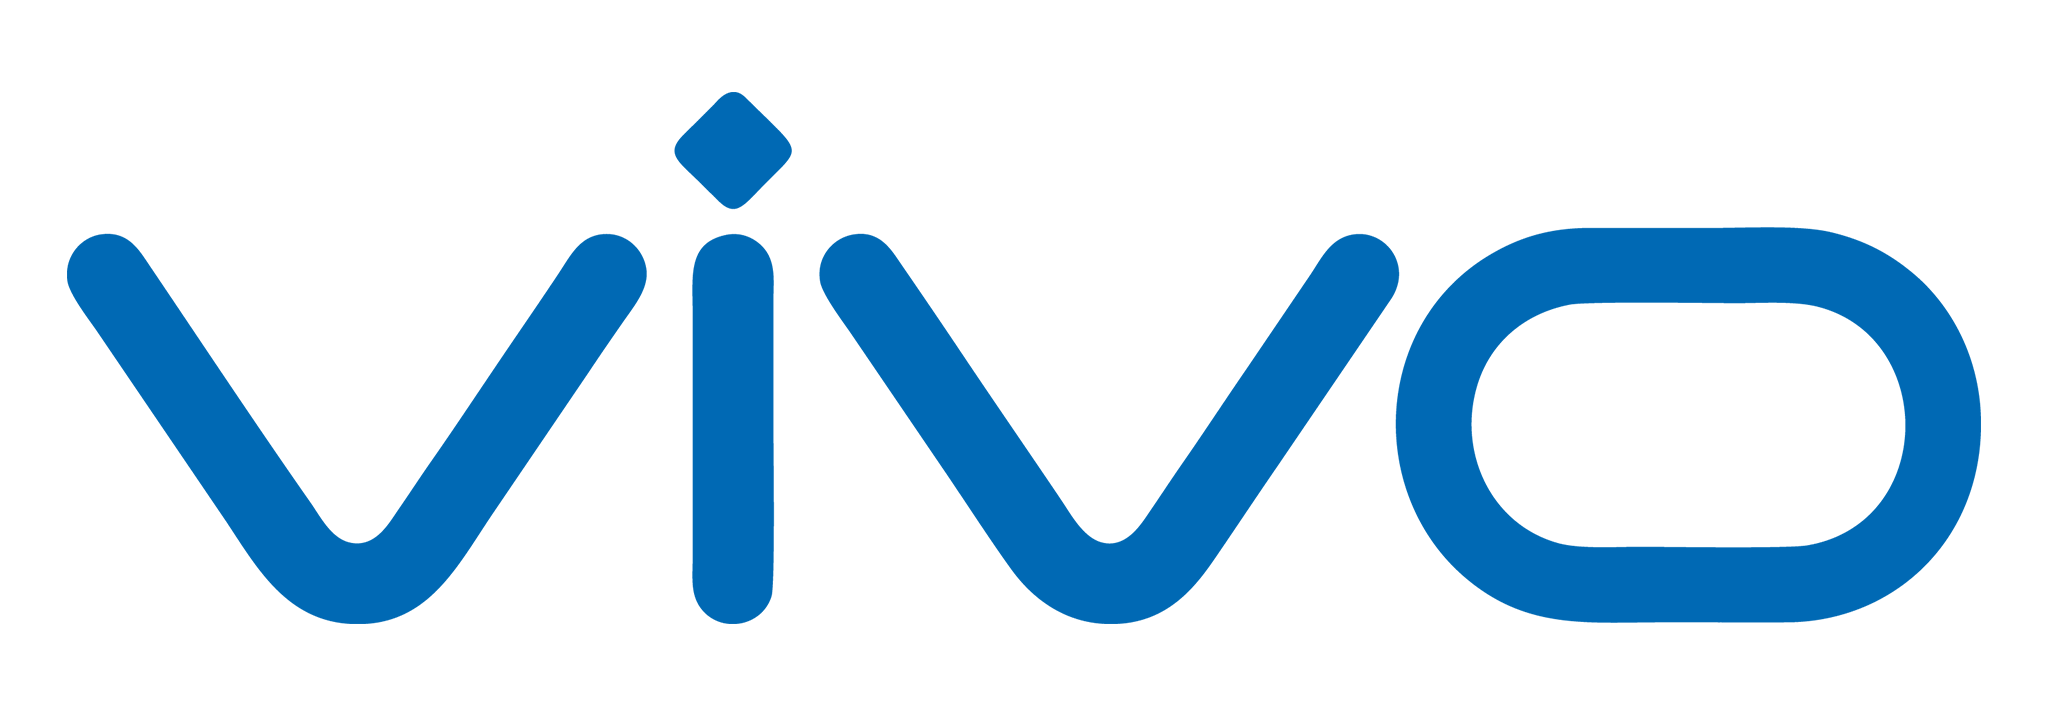 vivo-Phone-logo